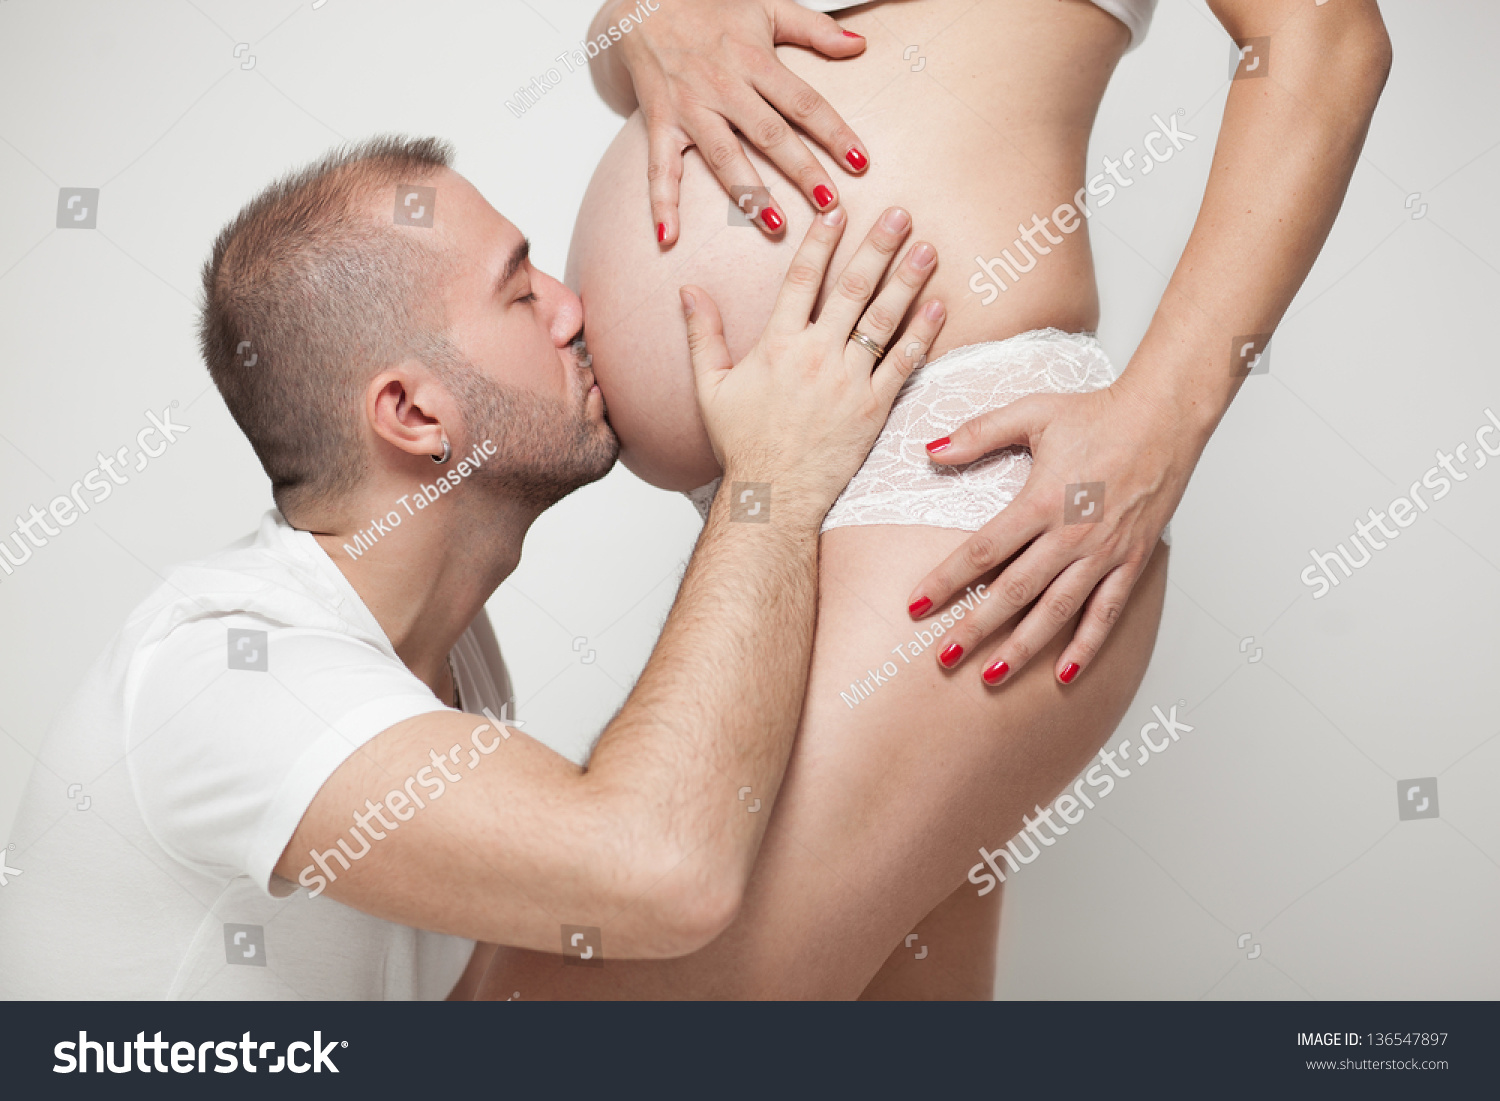 Мужики лижут теткам. Мужчина целует беременный живот. Поцелуй в живот. Целует пузико. Поцелуй в животик беременной.